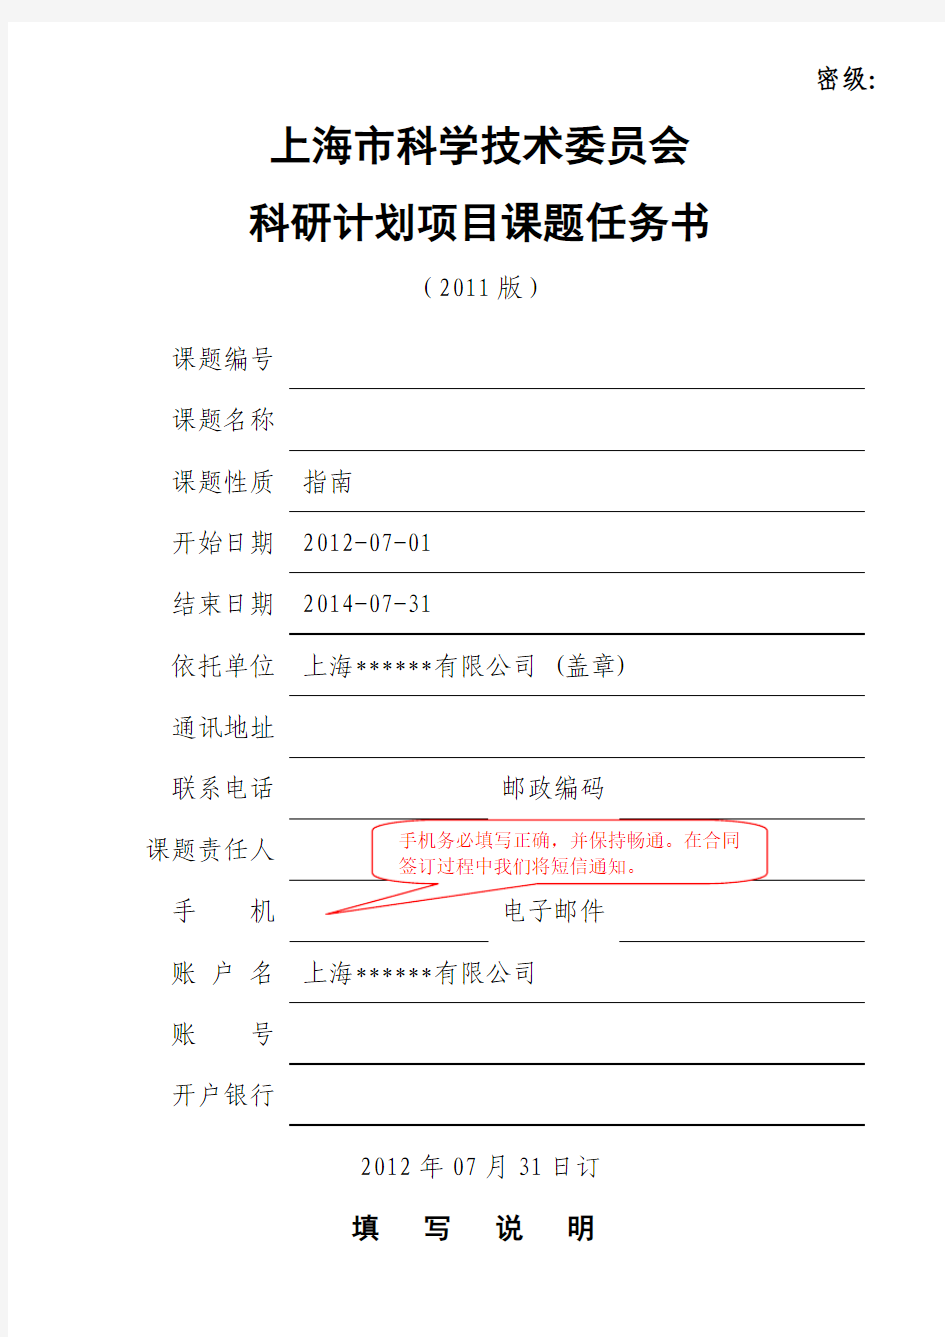 上海市科学技术委员会科研计划项目课题任务书